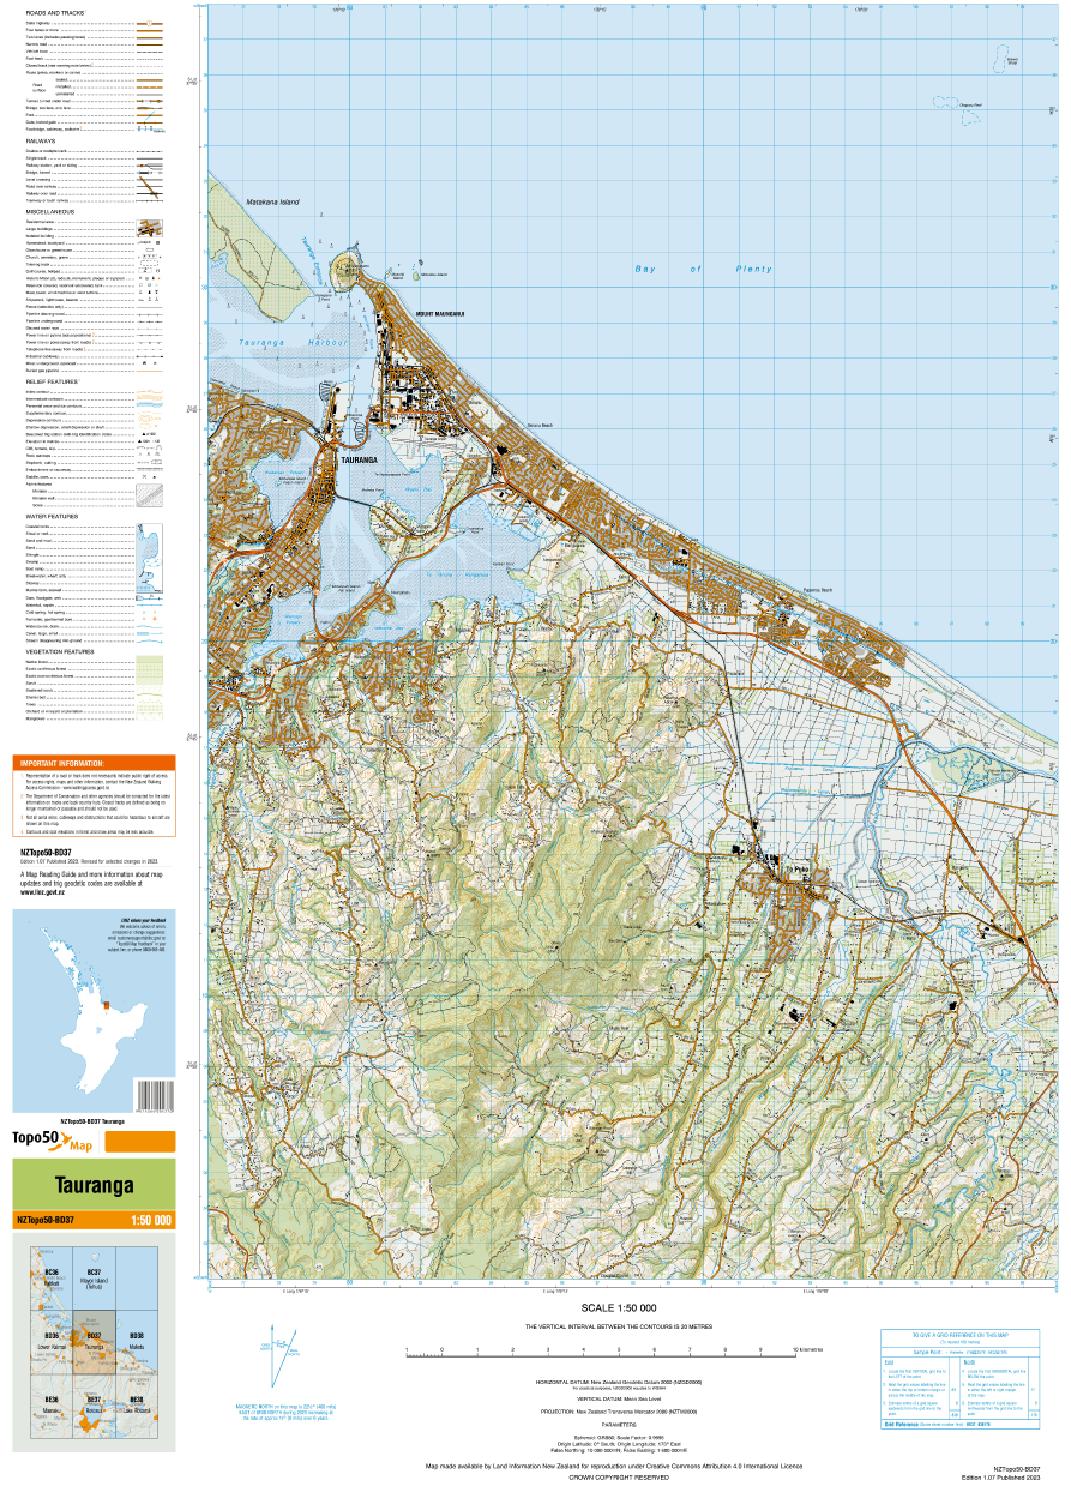 Topo map of Tauranga